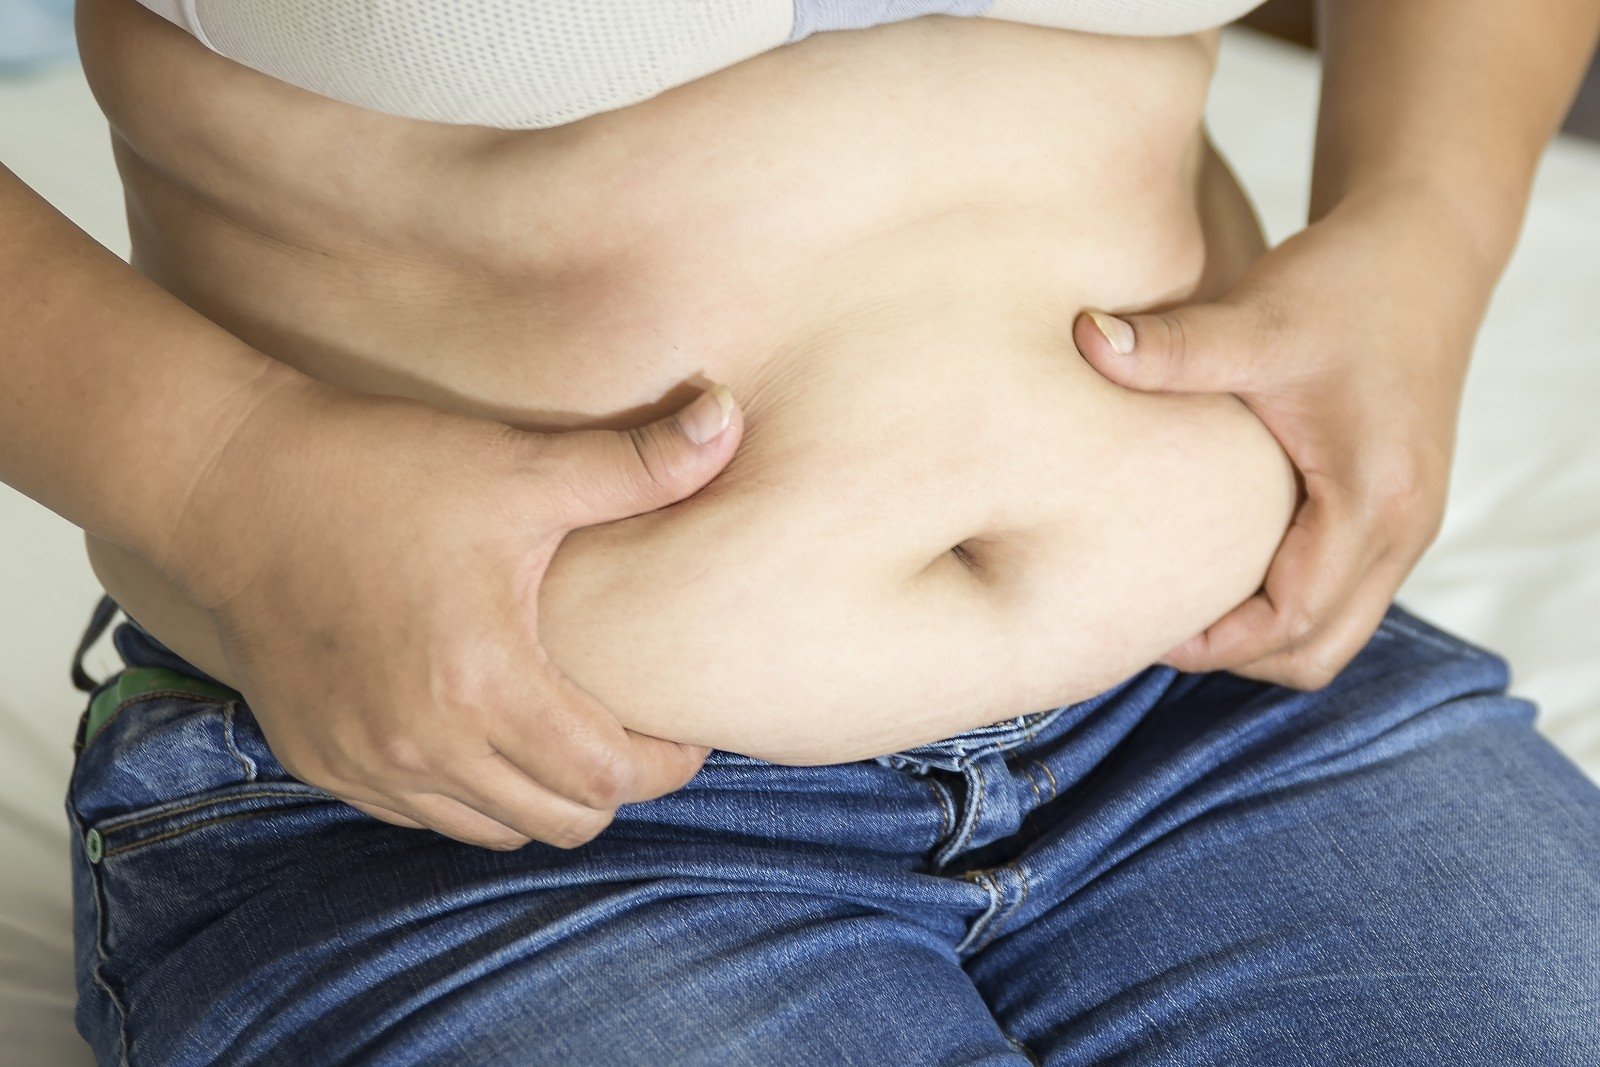 atsisėsti norint numesti pilvo riebalus ar polinesoieji riebalai gali padėti numesti svorio